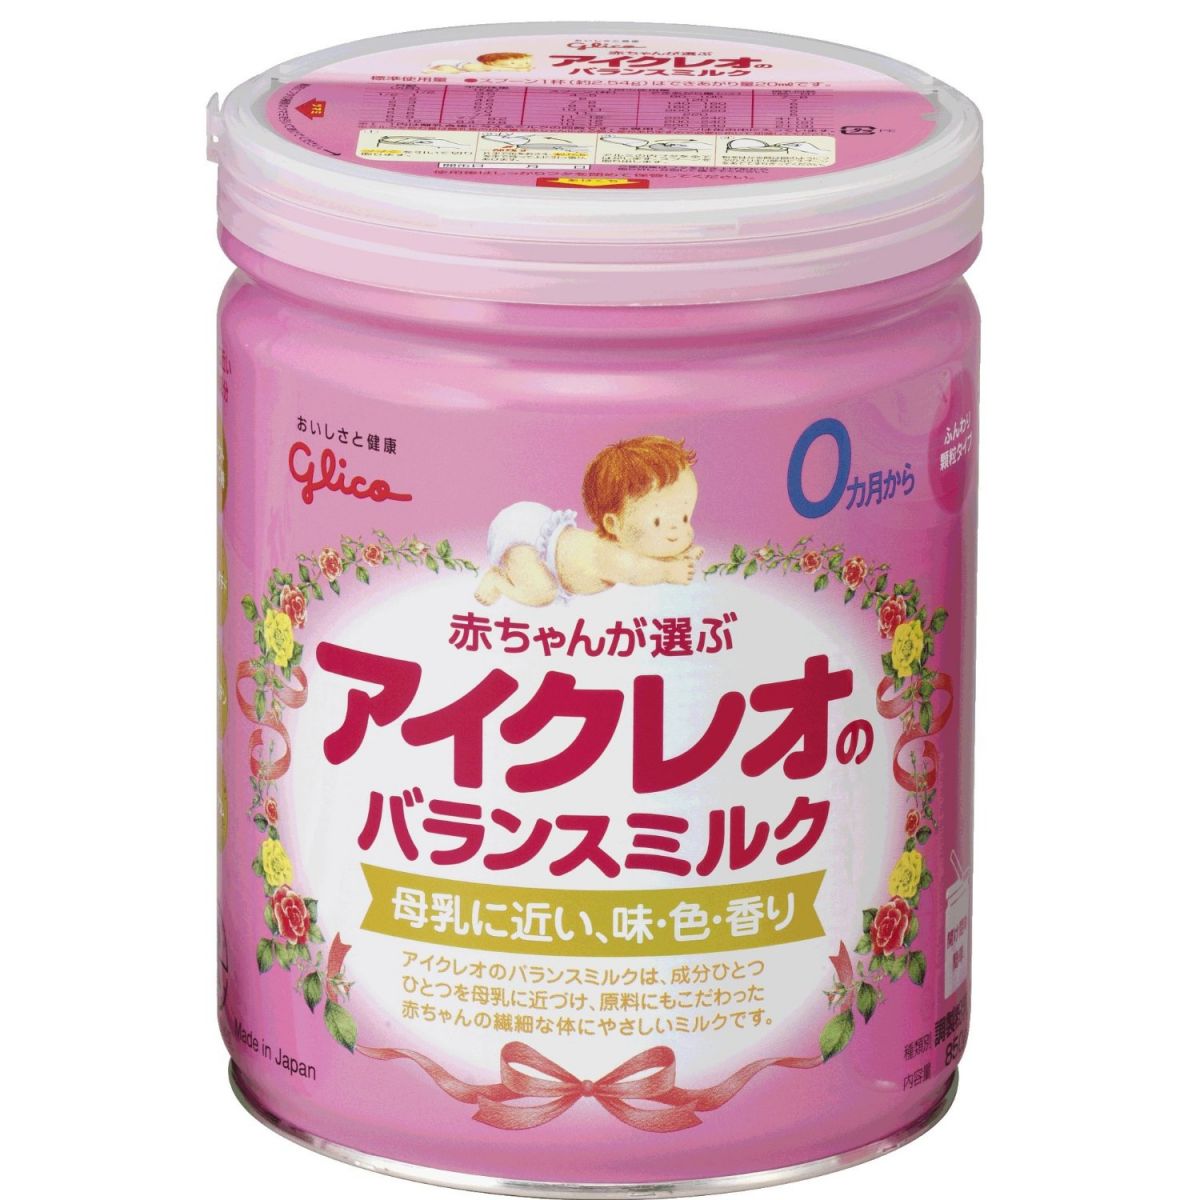 Top 6 Loại Sữa Nội Địa Nhật Bản Tốt Nhất Cho Trẻ Sơ Sinh Và Trẻ Nhỏ   Hanaichi Blog